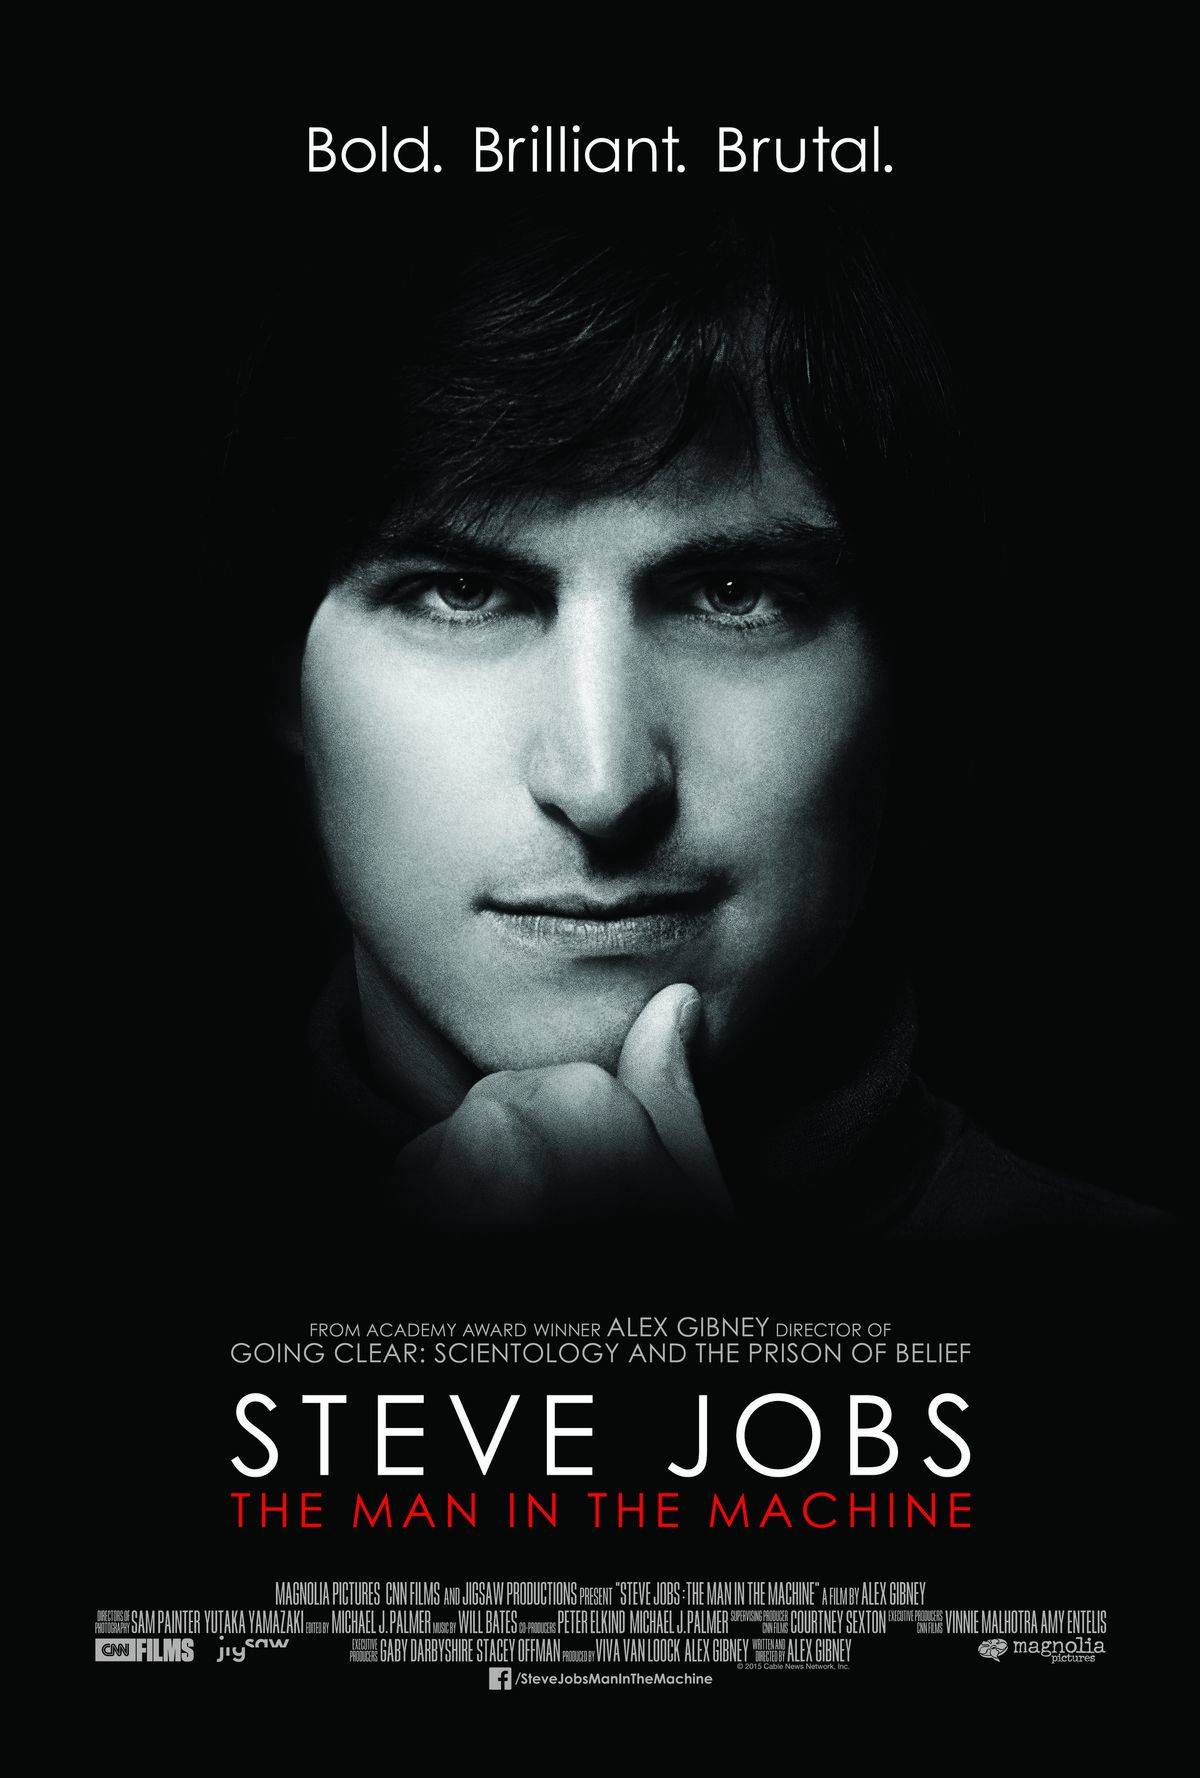 Alex Gibney's Steve Jobs documentary opens Sept. 4th.